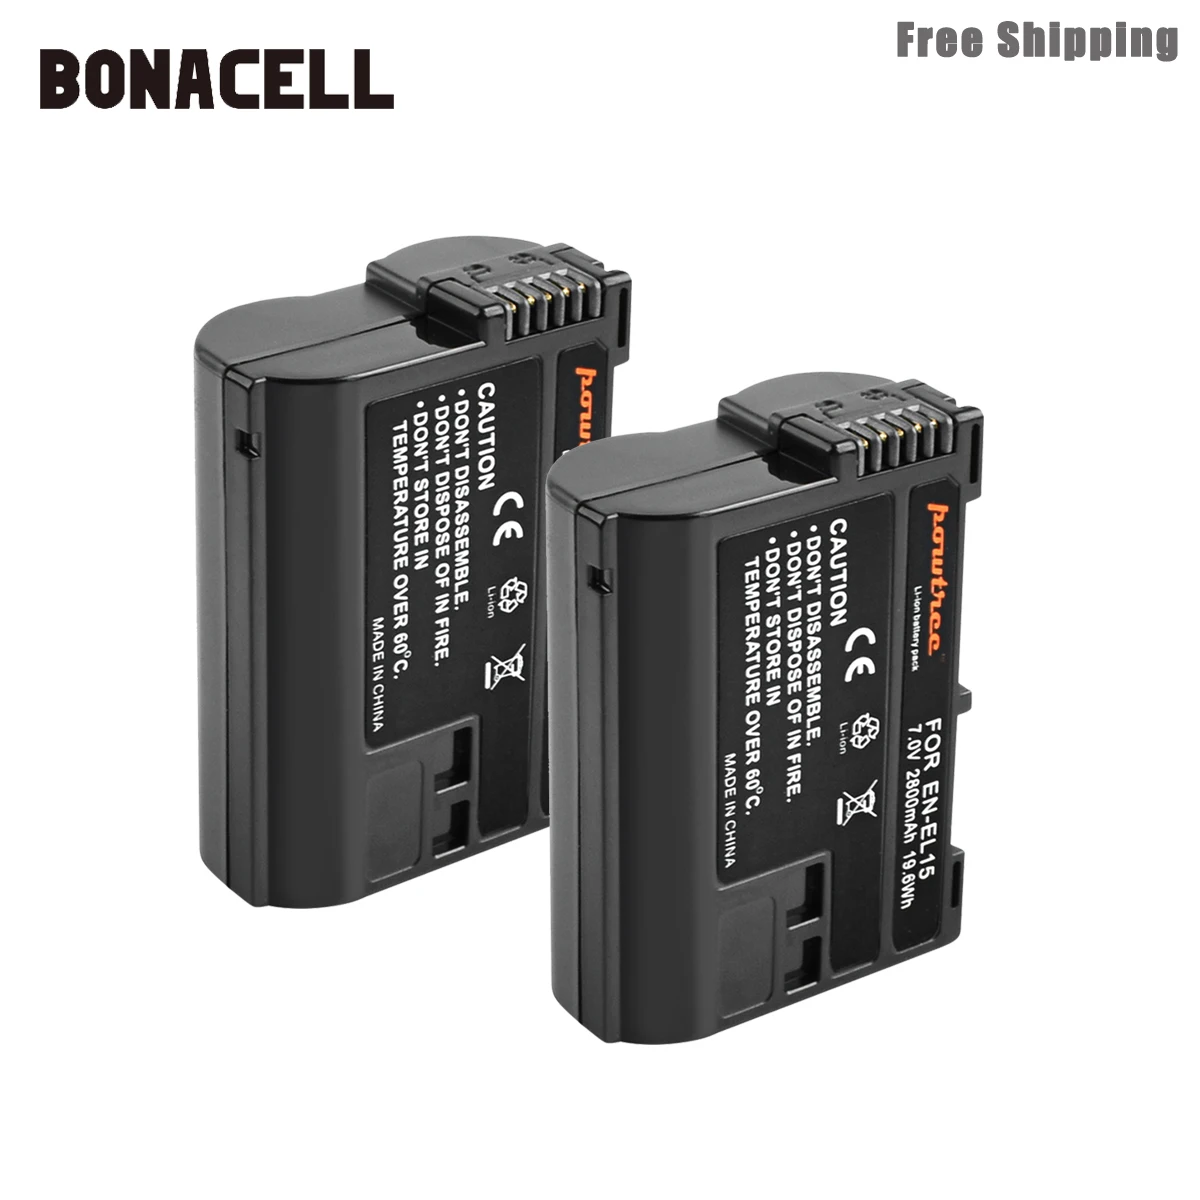 Bonacell 2800mAh EN-EL15 ENEL15 EN EL15 Camera Battery For Nikon DSLR D600 D610 D800 D800E D810 D7000 D7100 D7200 L50